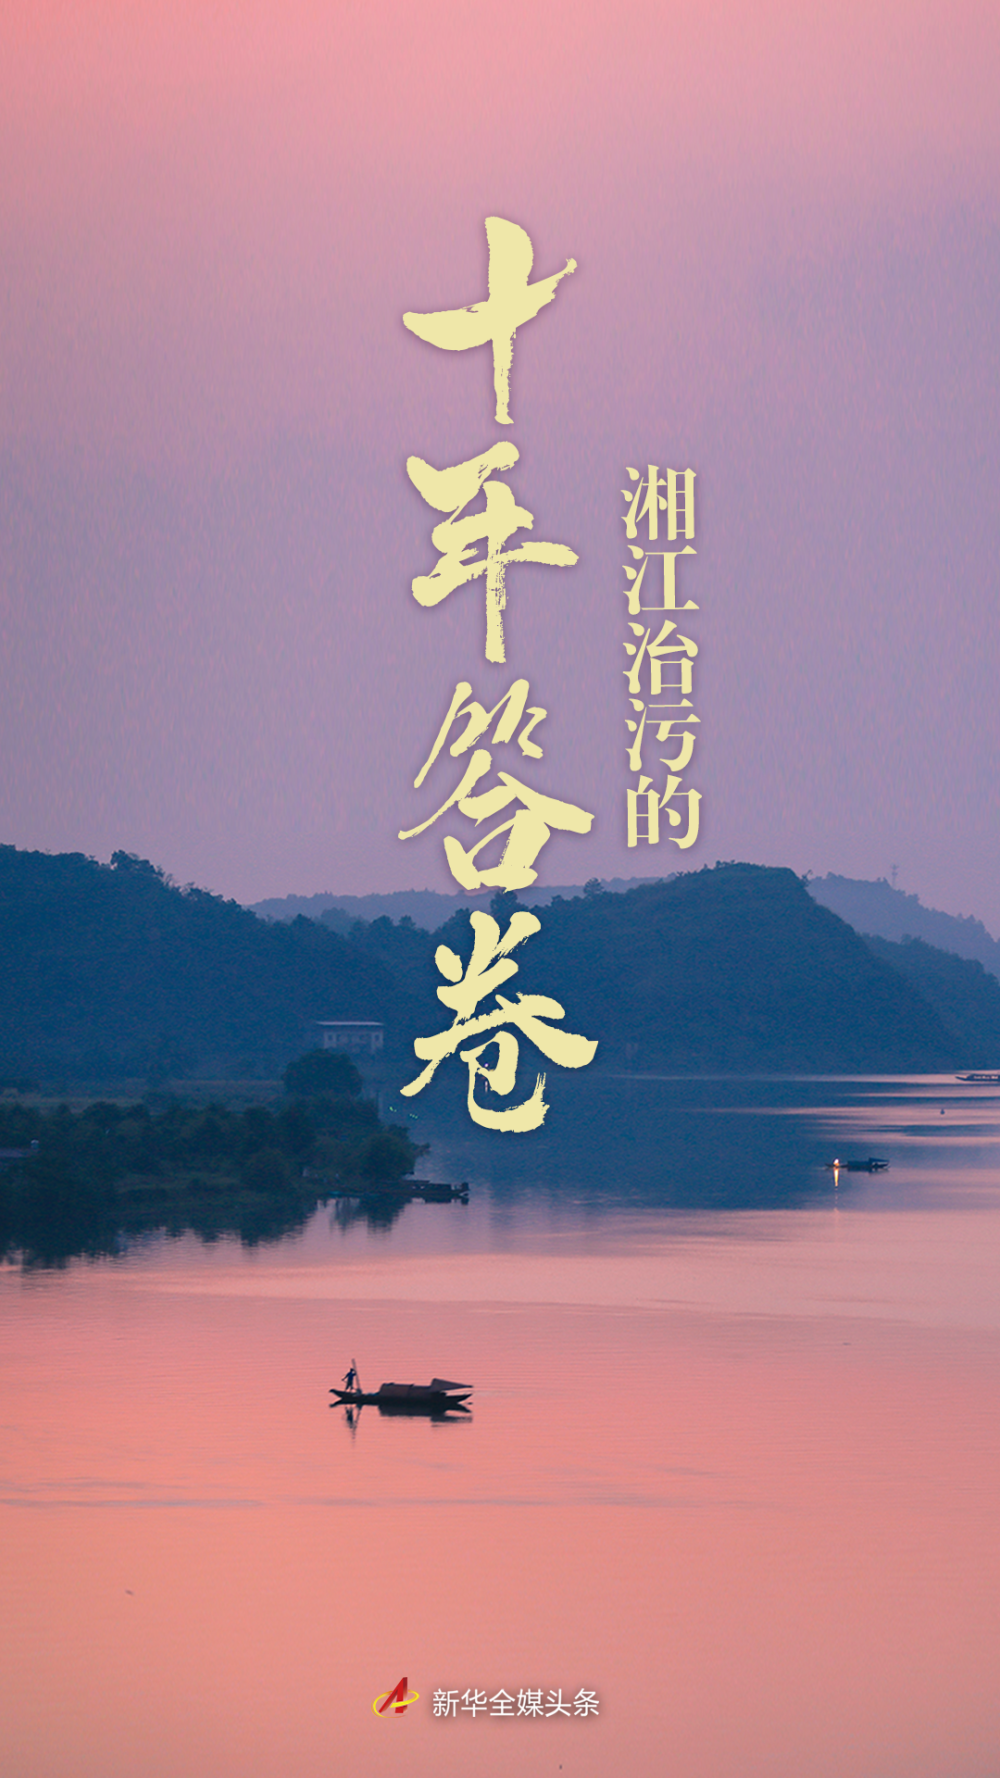 悠悠湘江，由南向北流淌，承载千年湖湘文化。千里湘江，养育沿岸4000多万人口，被湖南人亲切地称为“母亲河”。